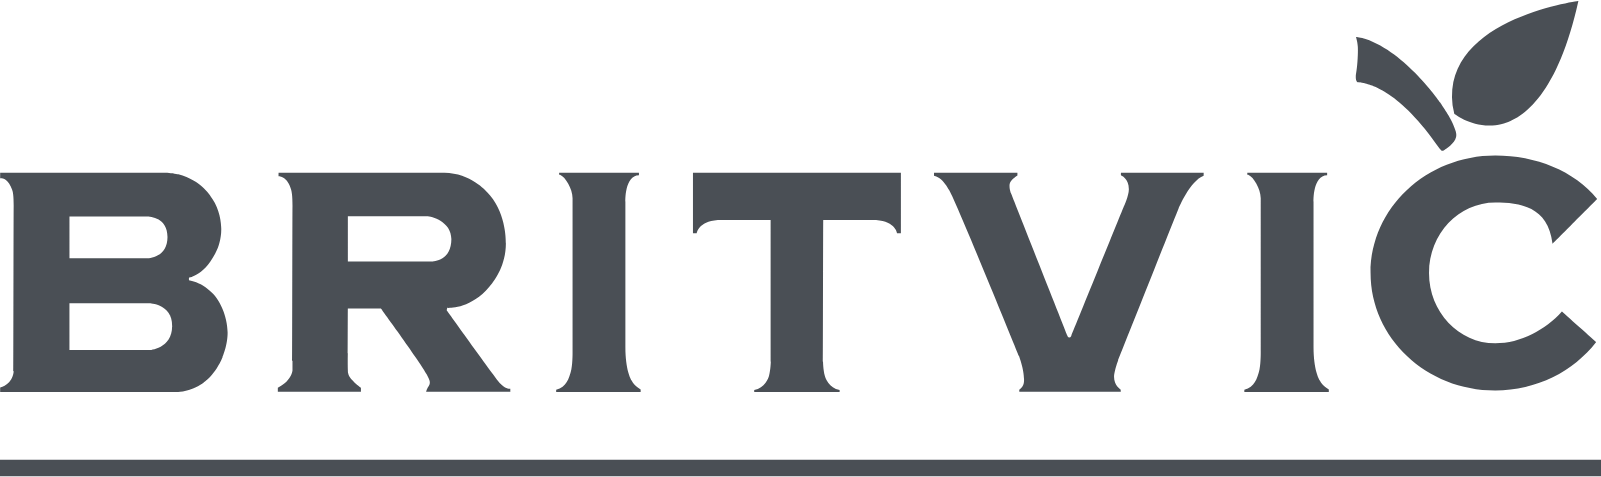 Britvic logo large (transparent PNG)